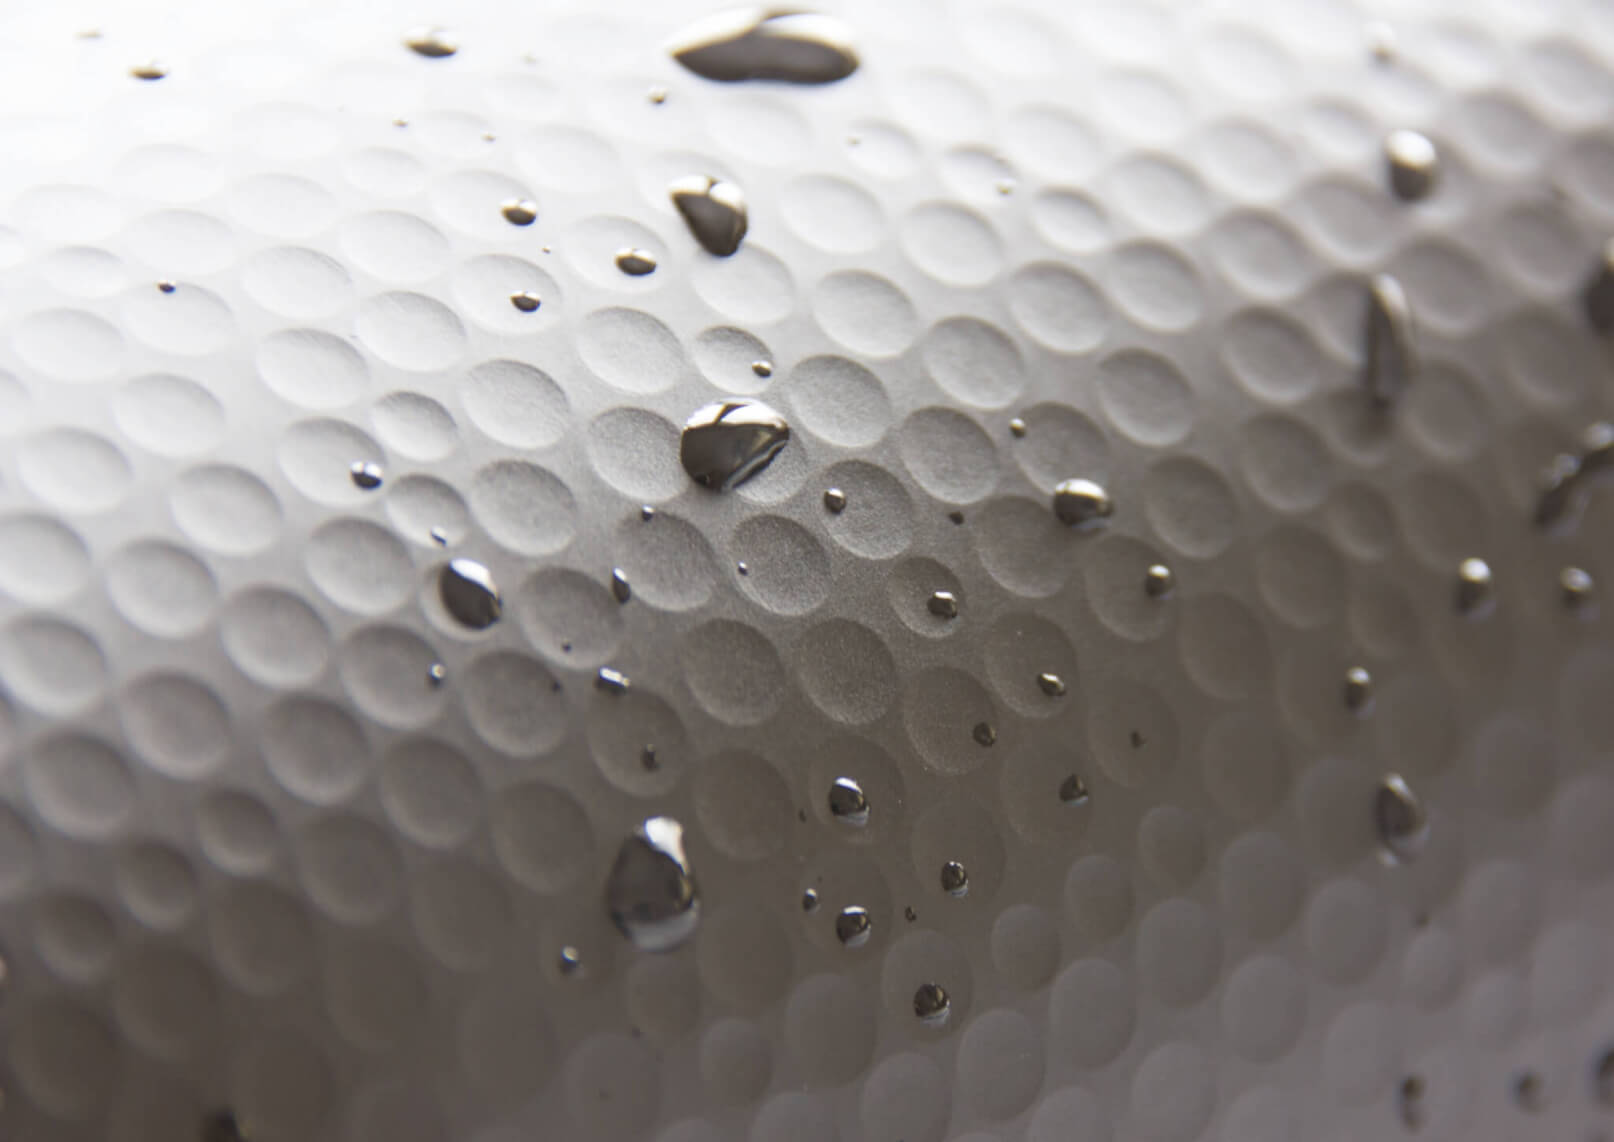 Detailbild der wasserfesten Oberflächen-Struktur vom Golfball-Muster der ZDRAX Entwicklung